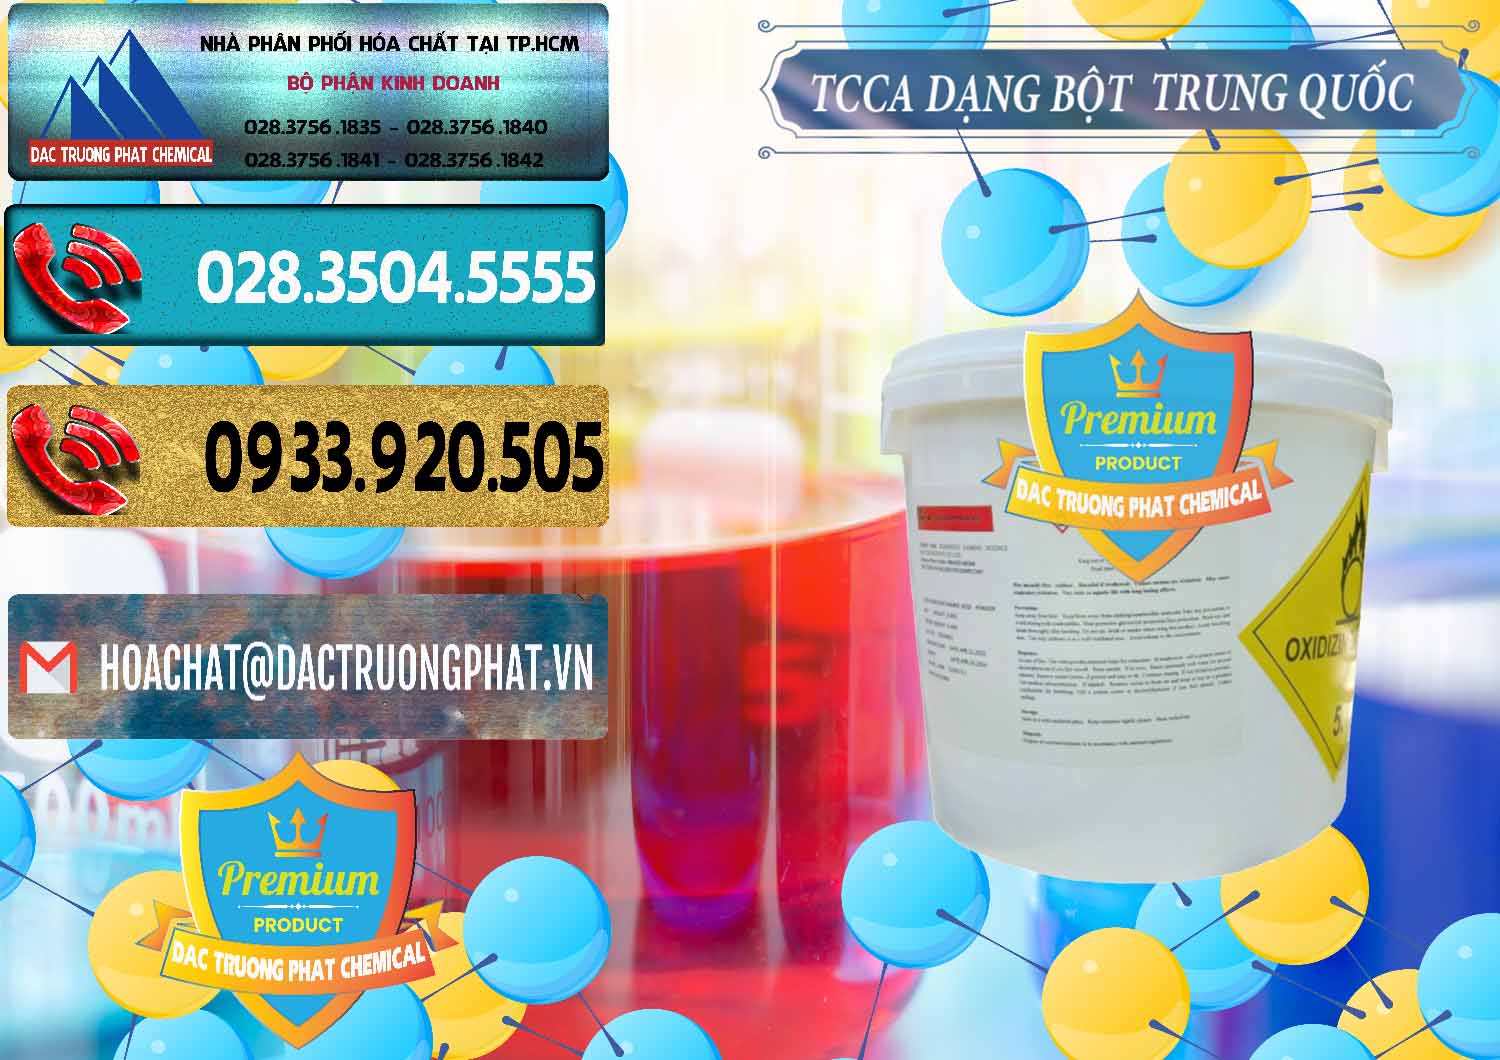 Đơn vị chuyên bán ( cung cấp ) TCCA - Acid Trichloroisocyanuric Dạng Bột Thùng 5kg Trung Quốc China - 0378 - Chuyên nhập khẩu ( cung cấp ) hóa chất tại TP.HCM - hoachatdetnhuom.com